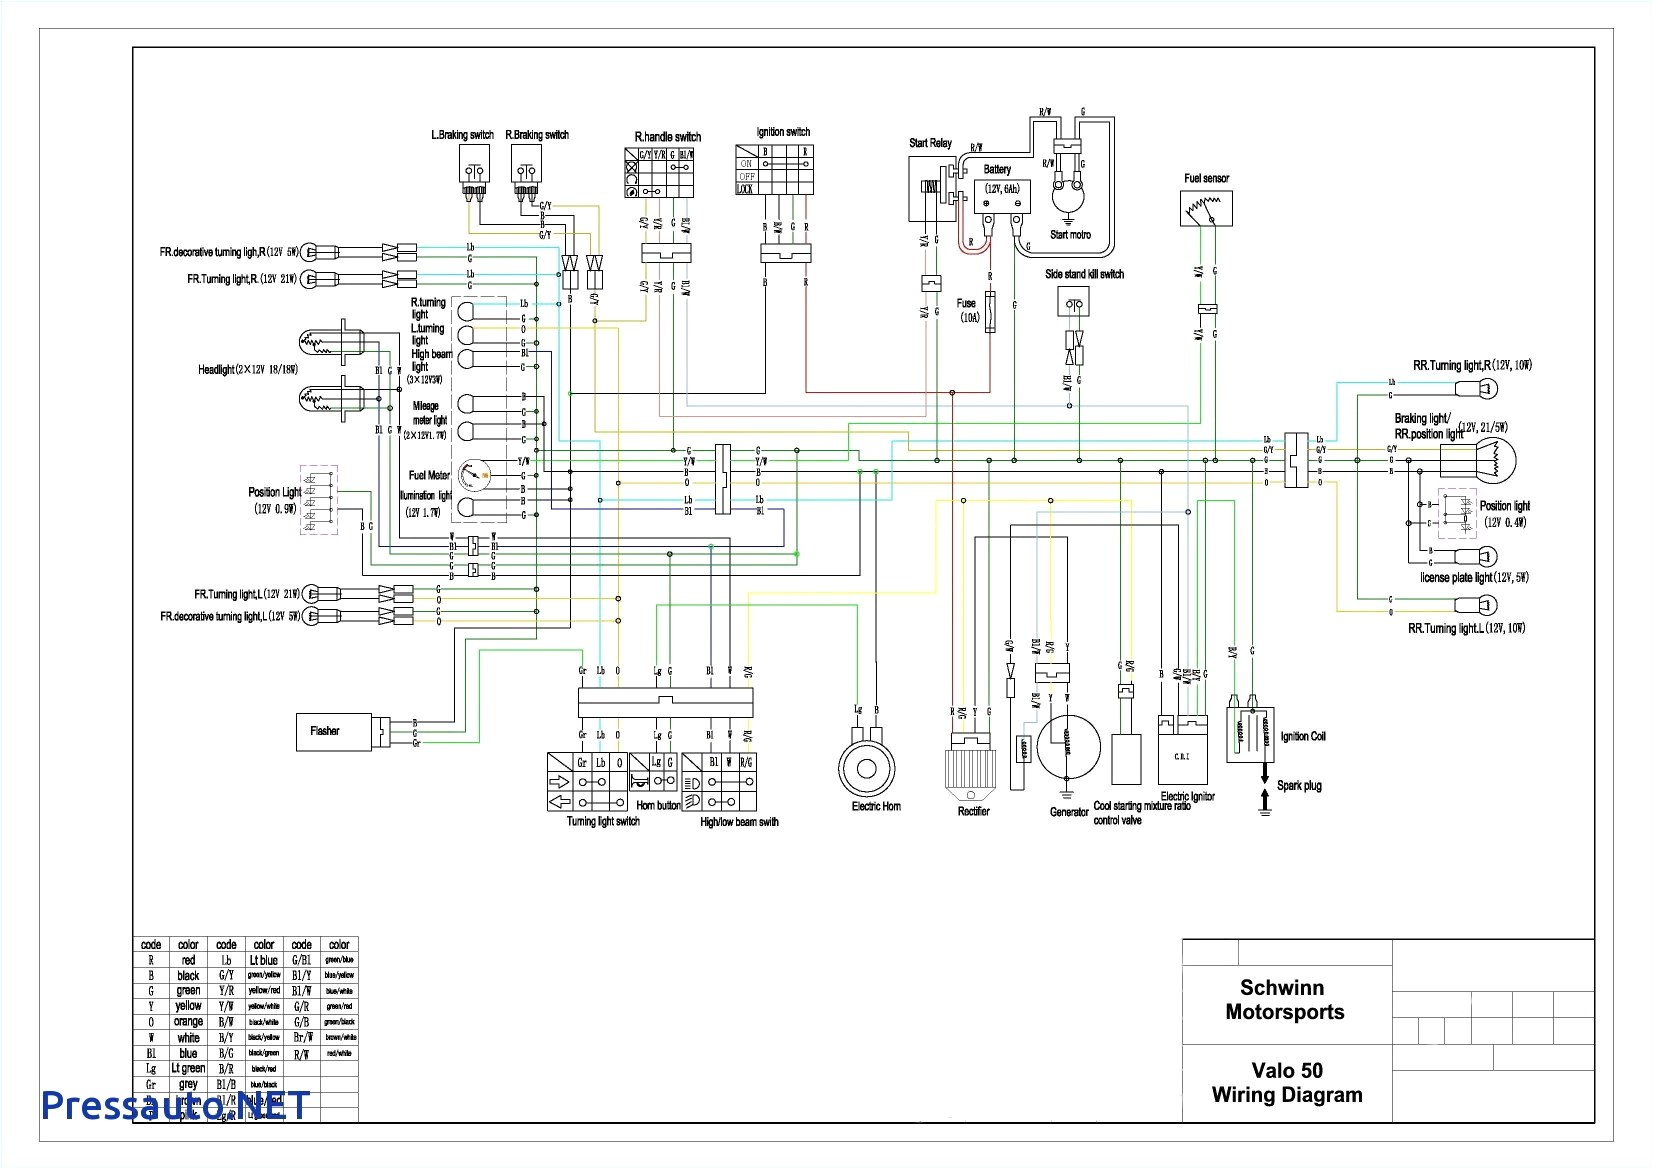 taotao 50 wiring diagram wiring diagram preview taotao 50 wiring diagram tao tao 50cc wiring diagrams